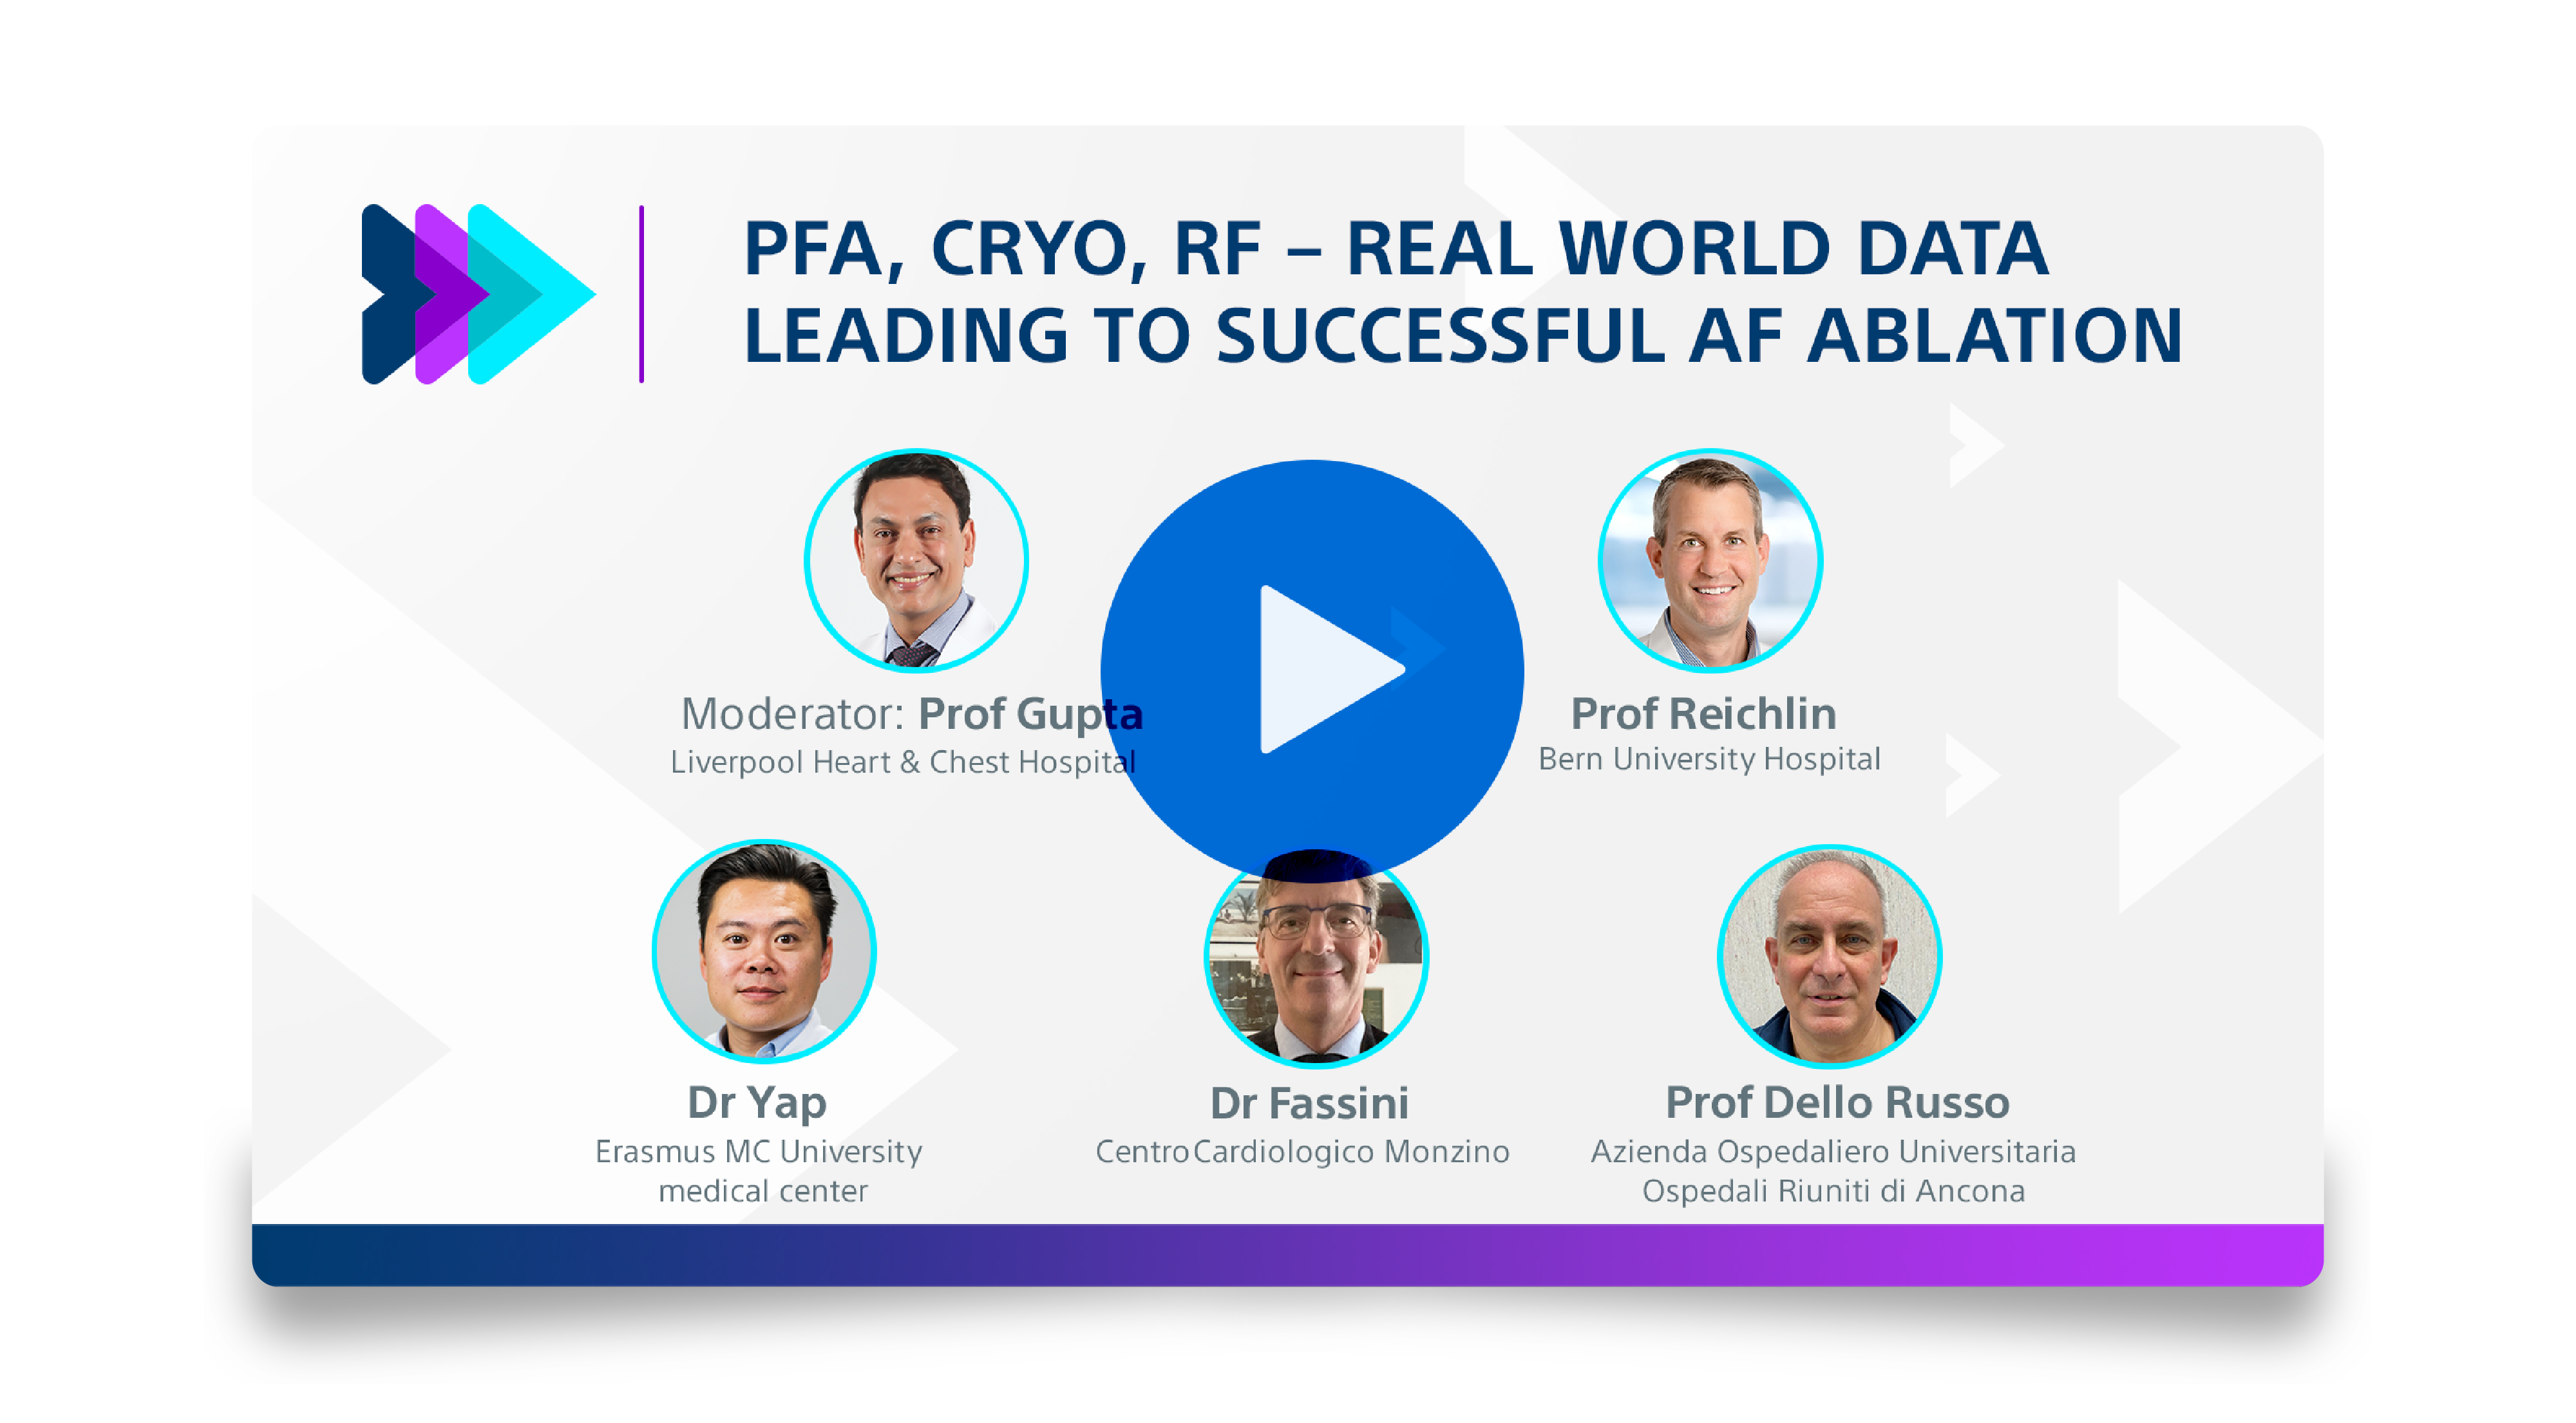 PFA, CRYO, RF - REAL WORLD DATA LEADING TO SUCCESSFUL AF ABLATION